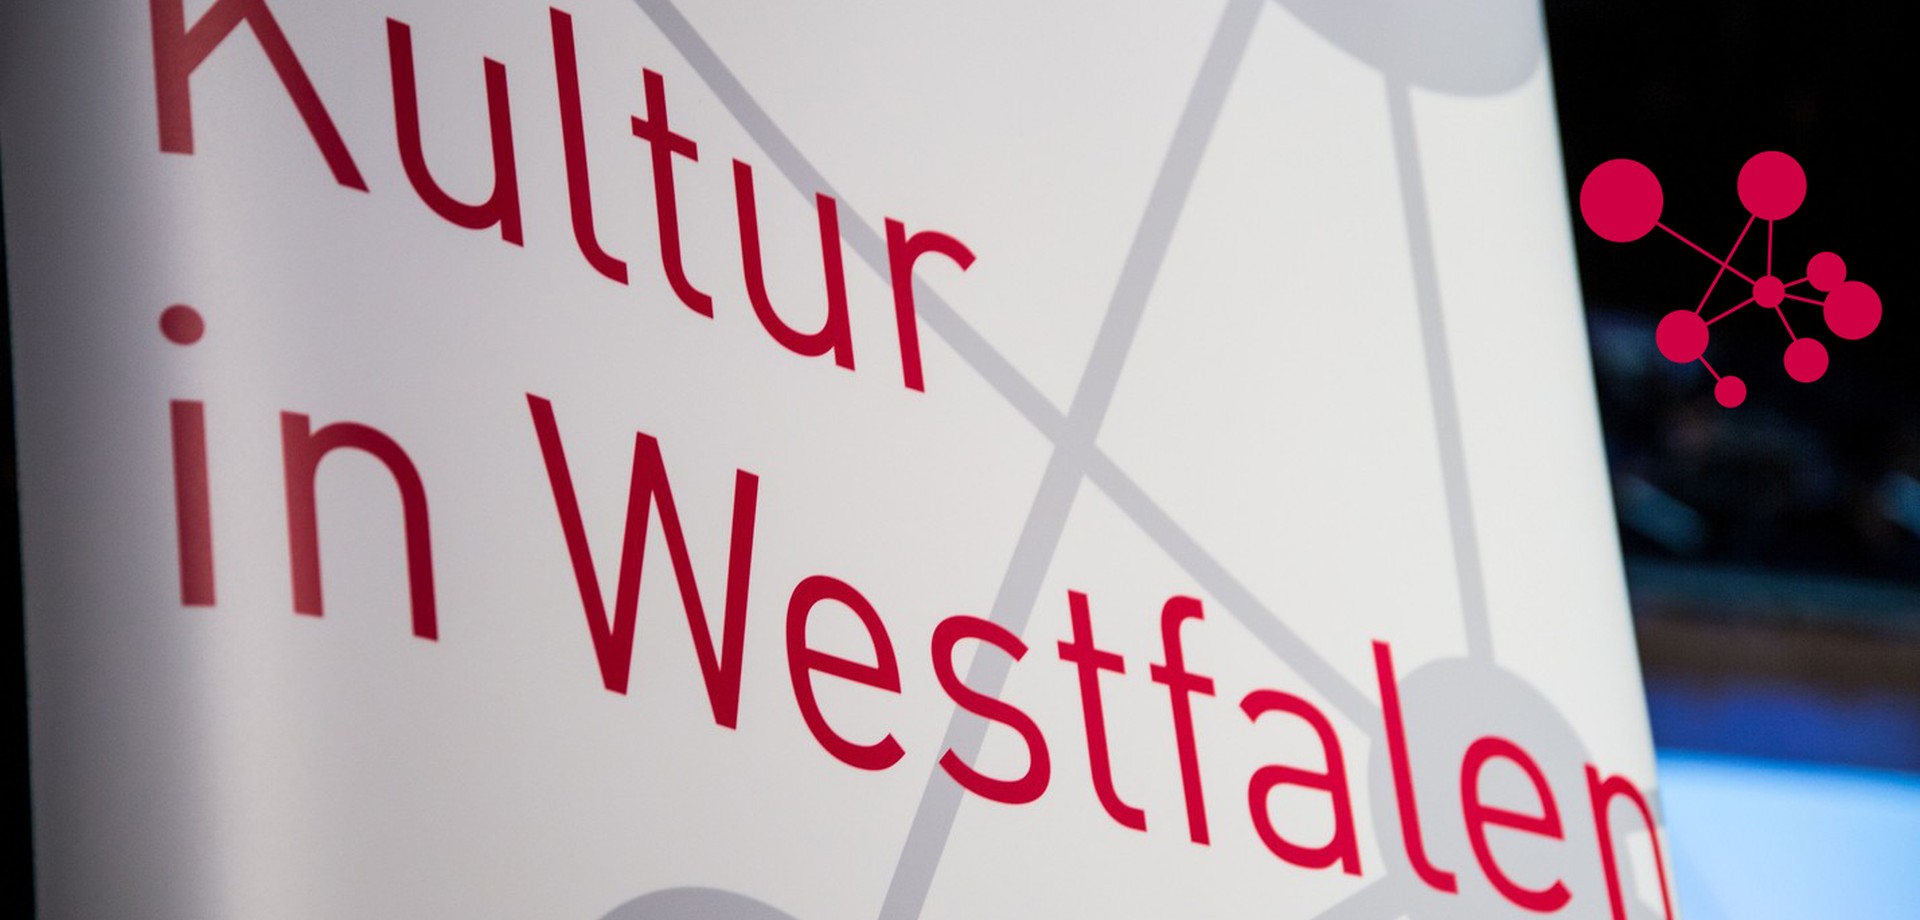 Das Logo des Referats "Strategische Beratung/ Kultur in Westfalen" auf einem Roll-Up dargestellt.